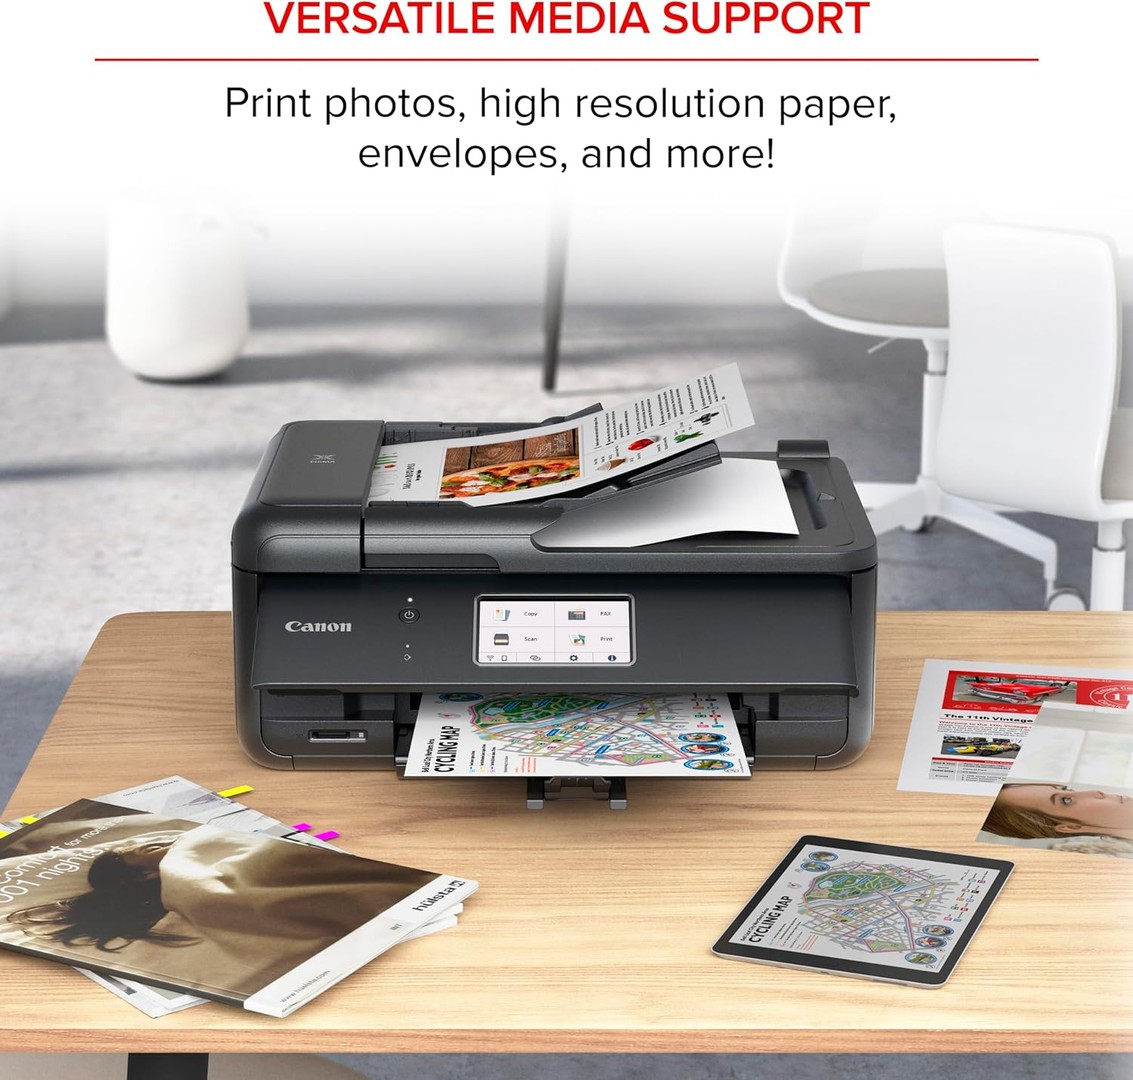 impresoras y scanners - Impresora Canon PIXMA TR8620a Multifuncional, fax, alimentador automático ADF 0